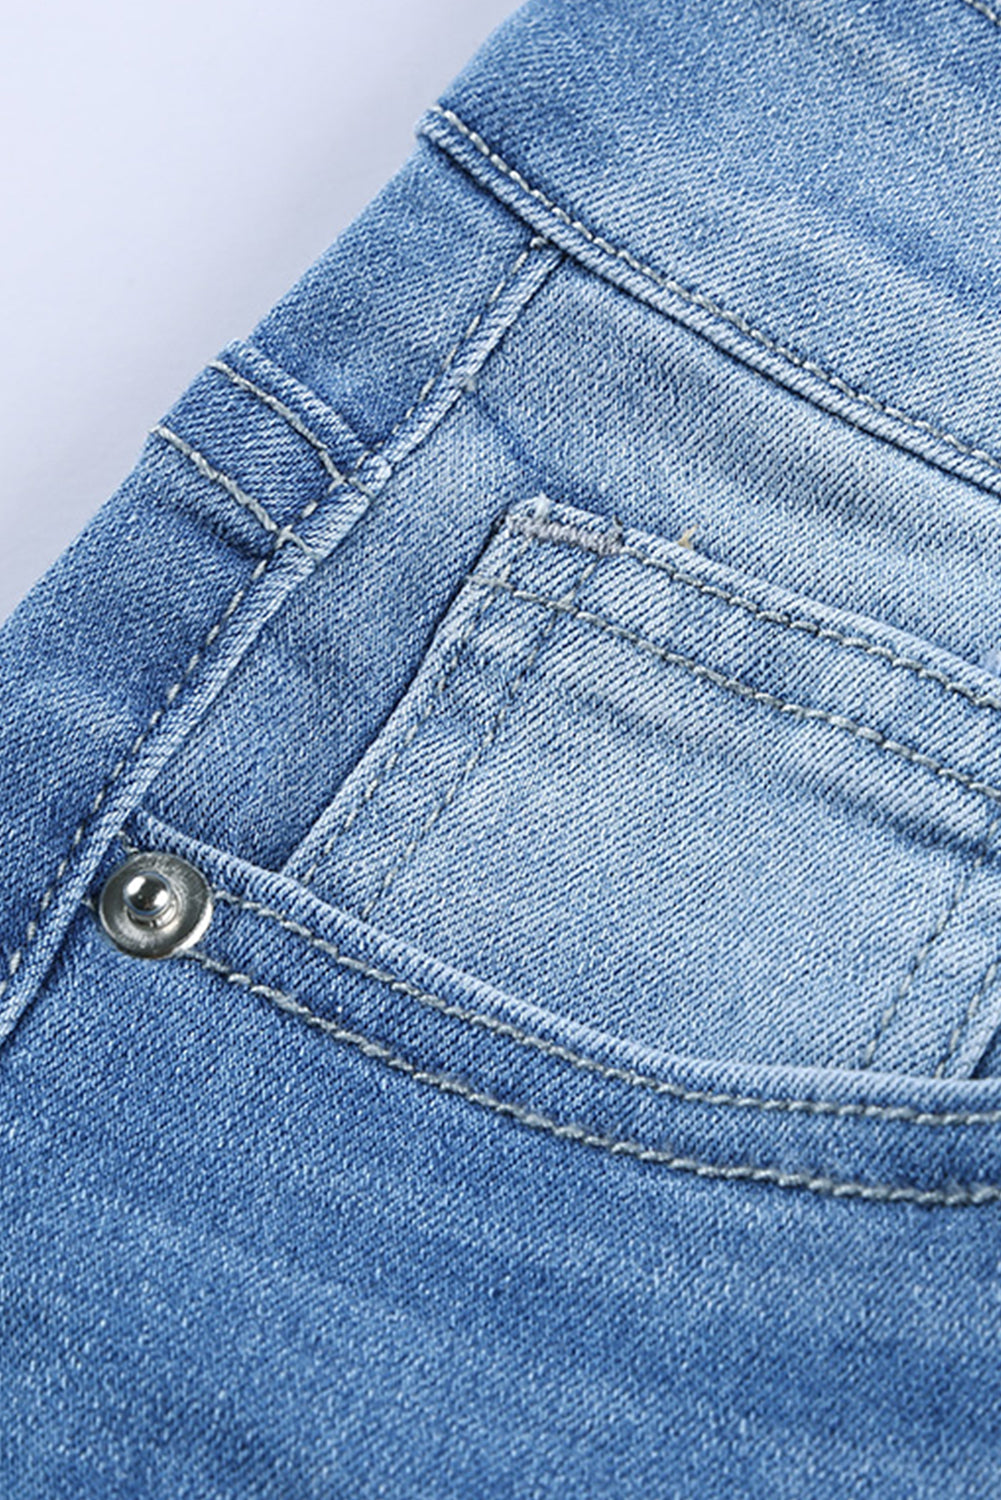 Verwaschene Jeans mit mittelhohem Bund und Löchern